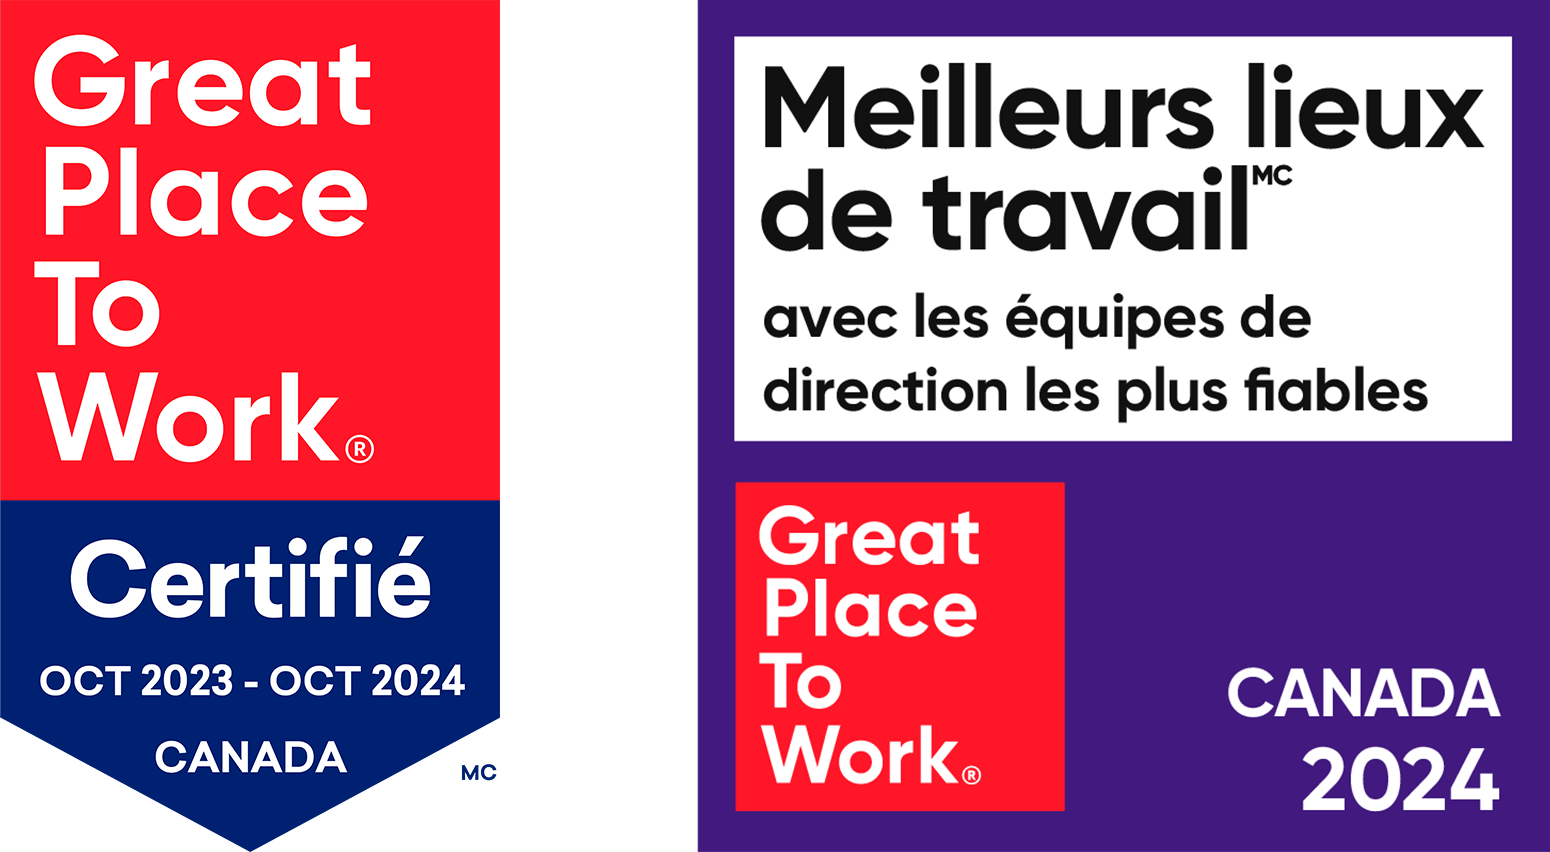 Great Place to Work logos - Certifié 2024 et Meilleurs lieux de travail